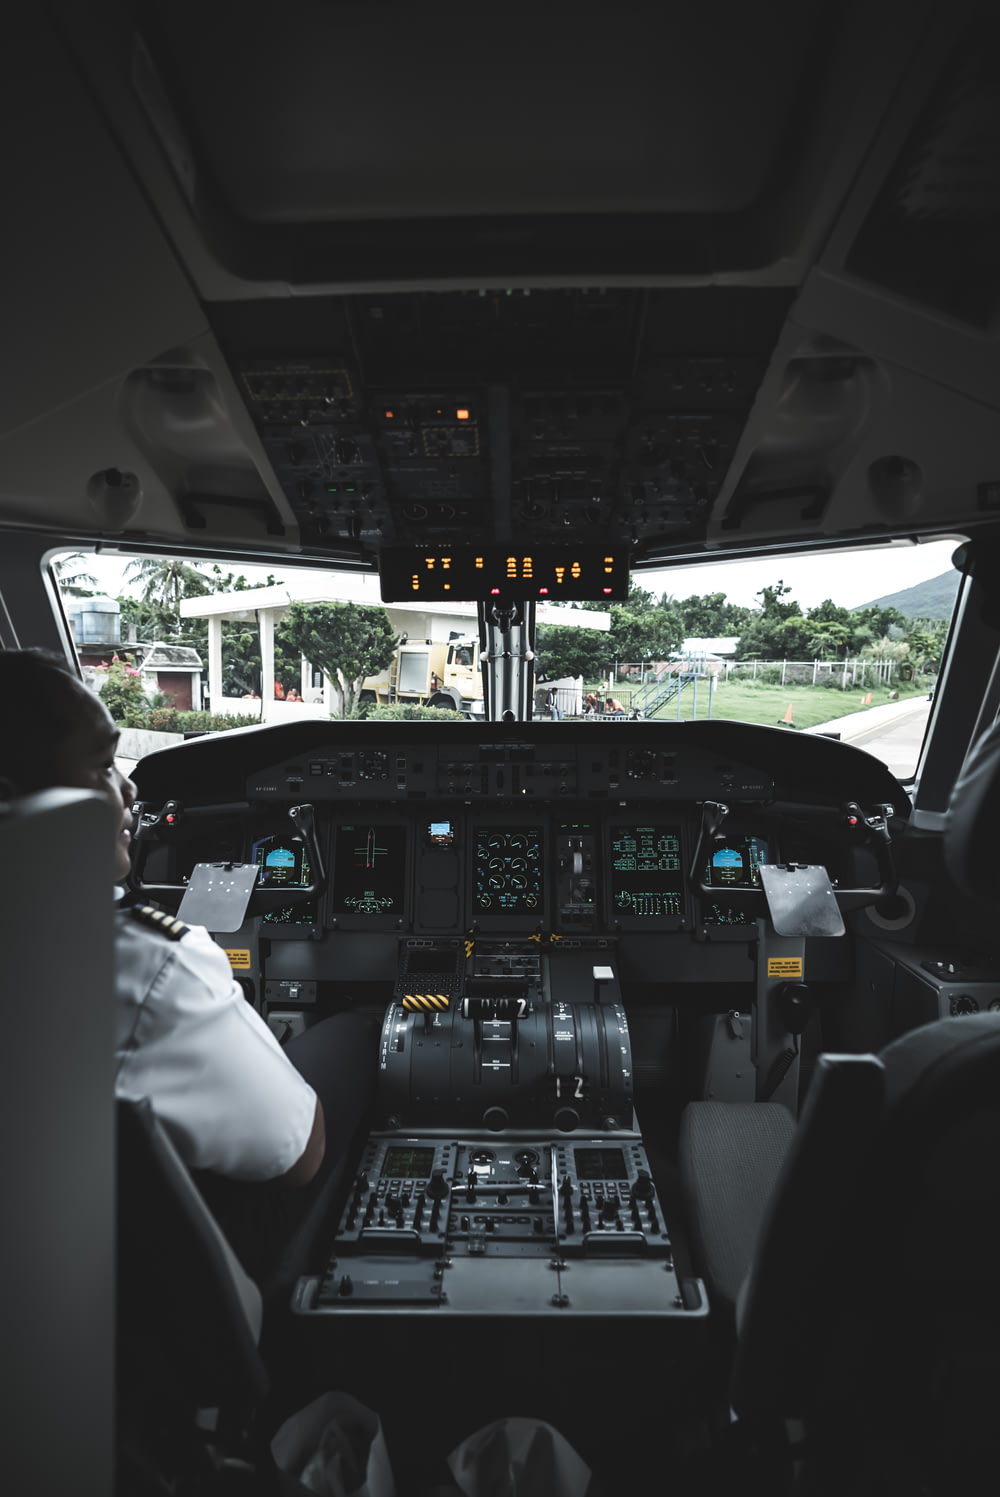 Piloto en el interior operando la aeronave